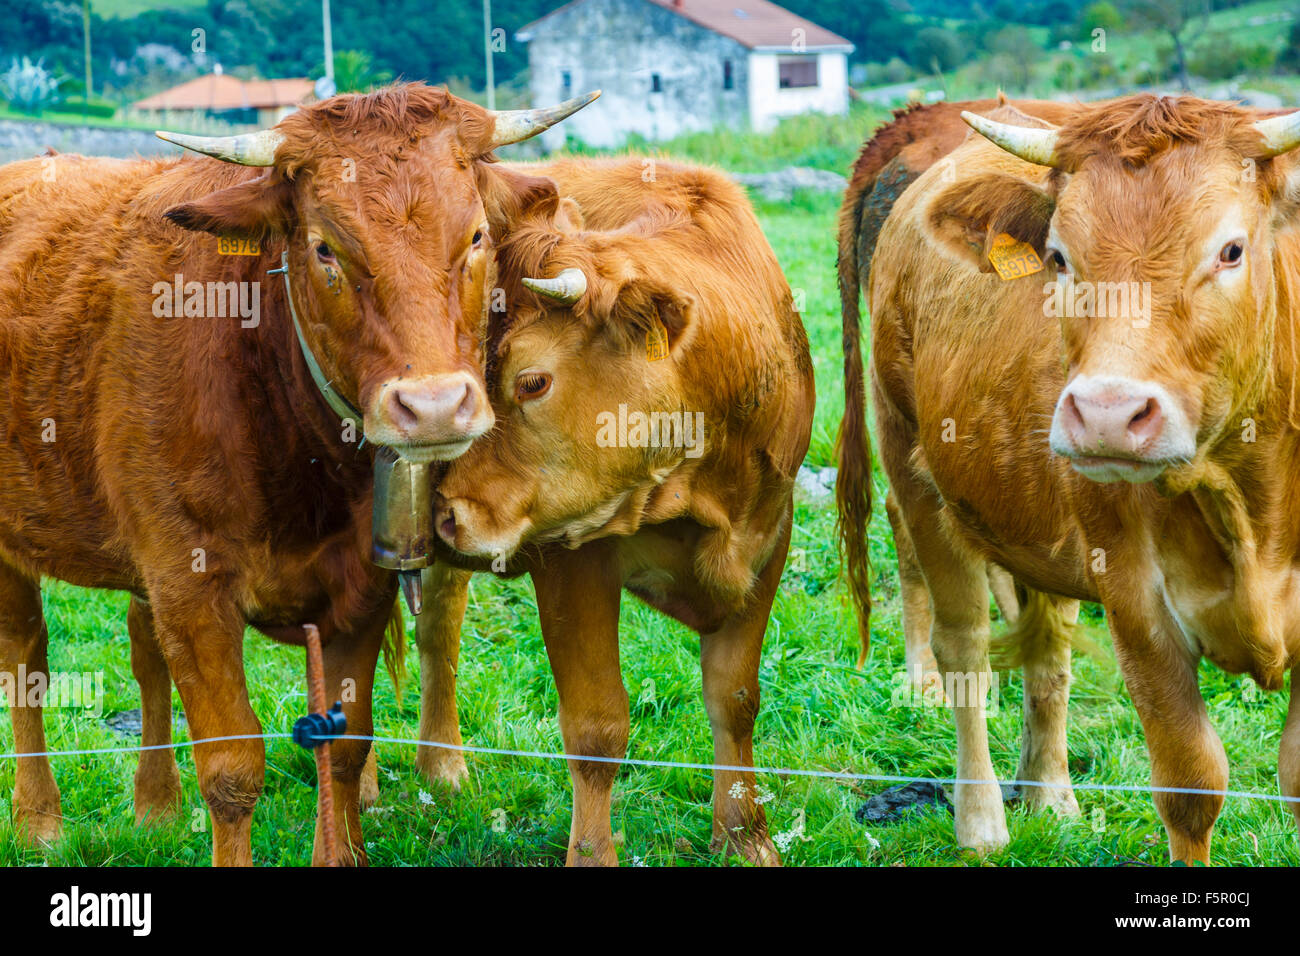 Cow in farmland. Stock Photo